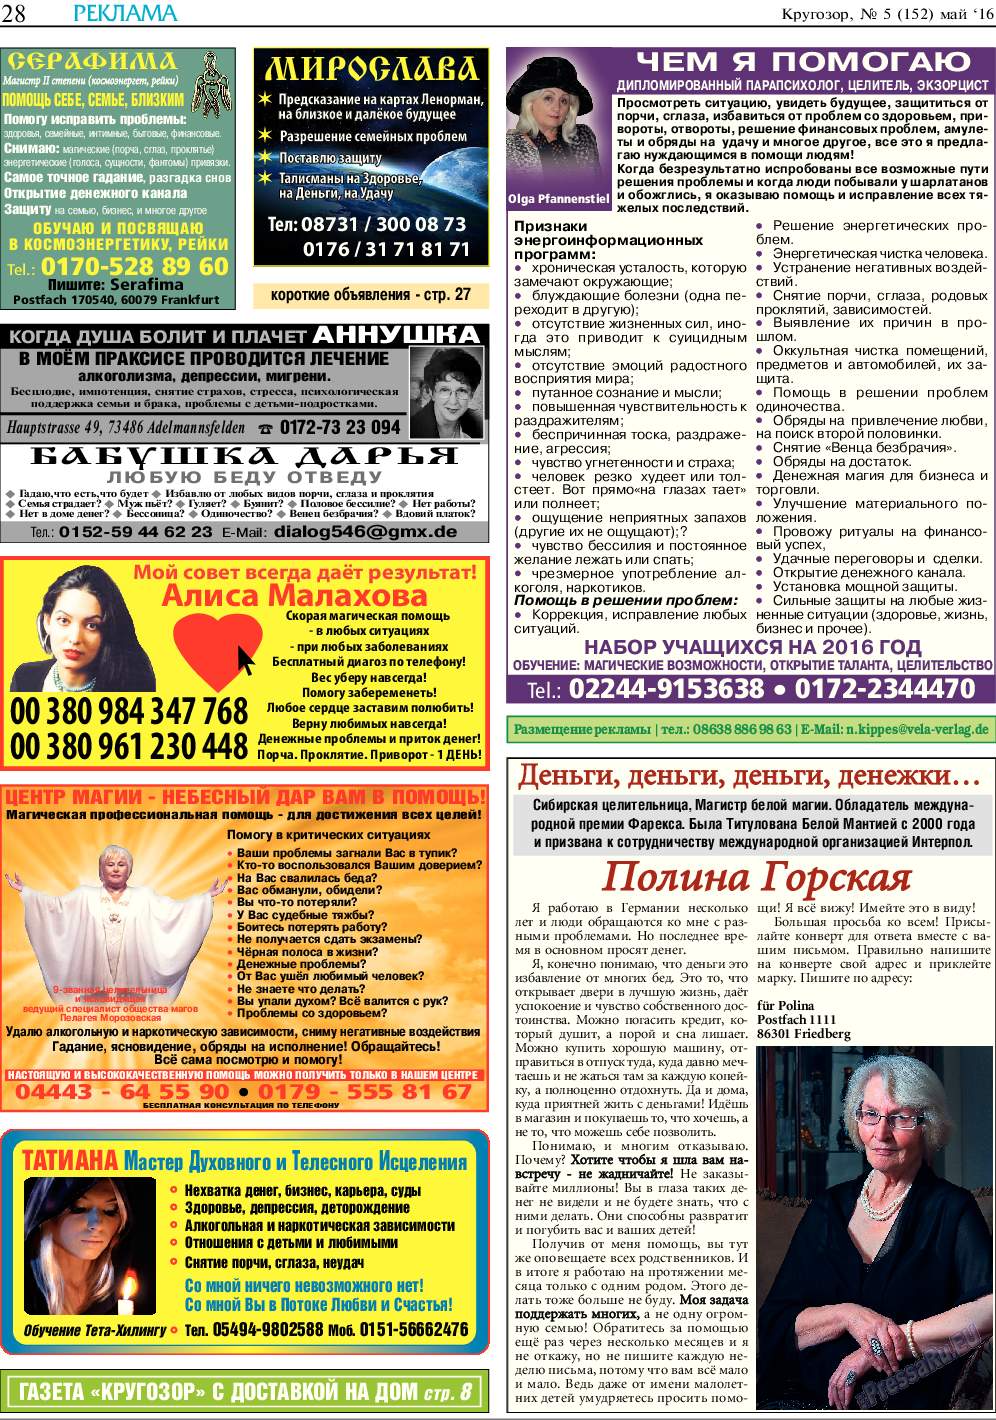 Кругозор, газета. 2016 №5 стр.28